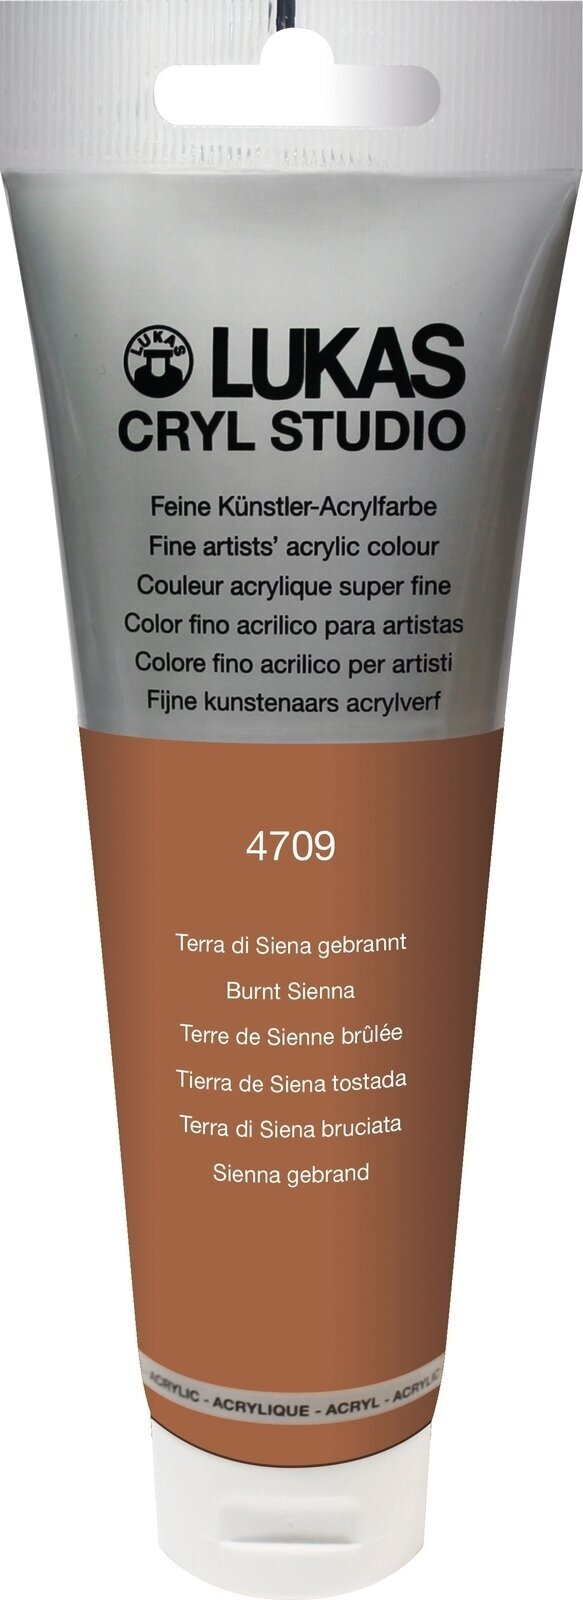 Tinta acrílica Lukas Cryl Studio Acrylic Paint Plastic Tube Tinta acrílica Burnt Sienna 125 ml 1 un.